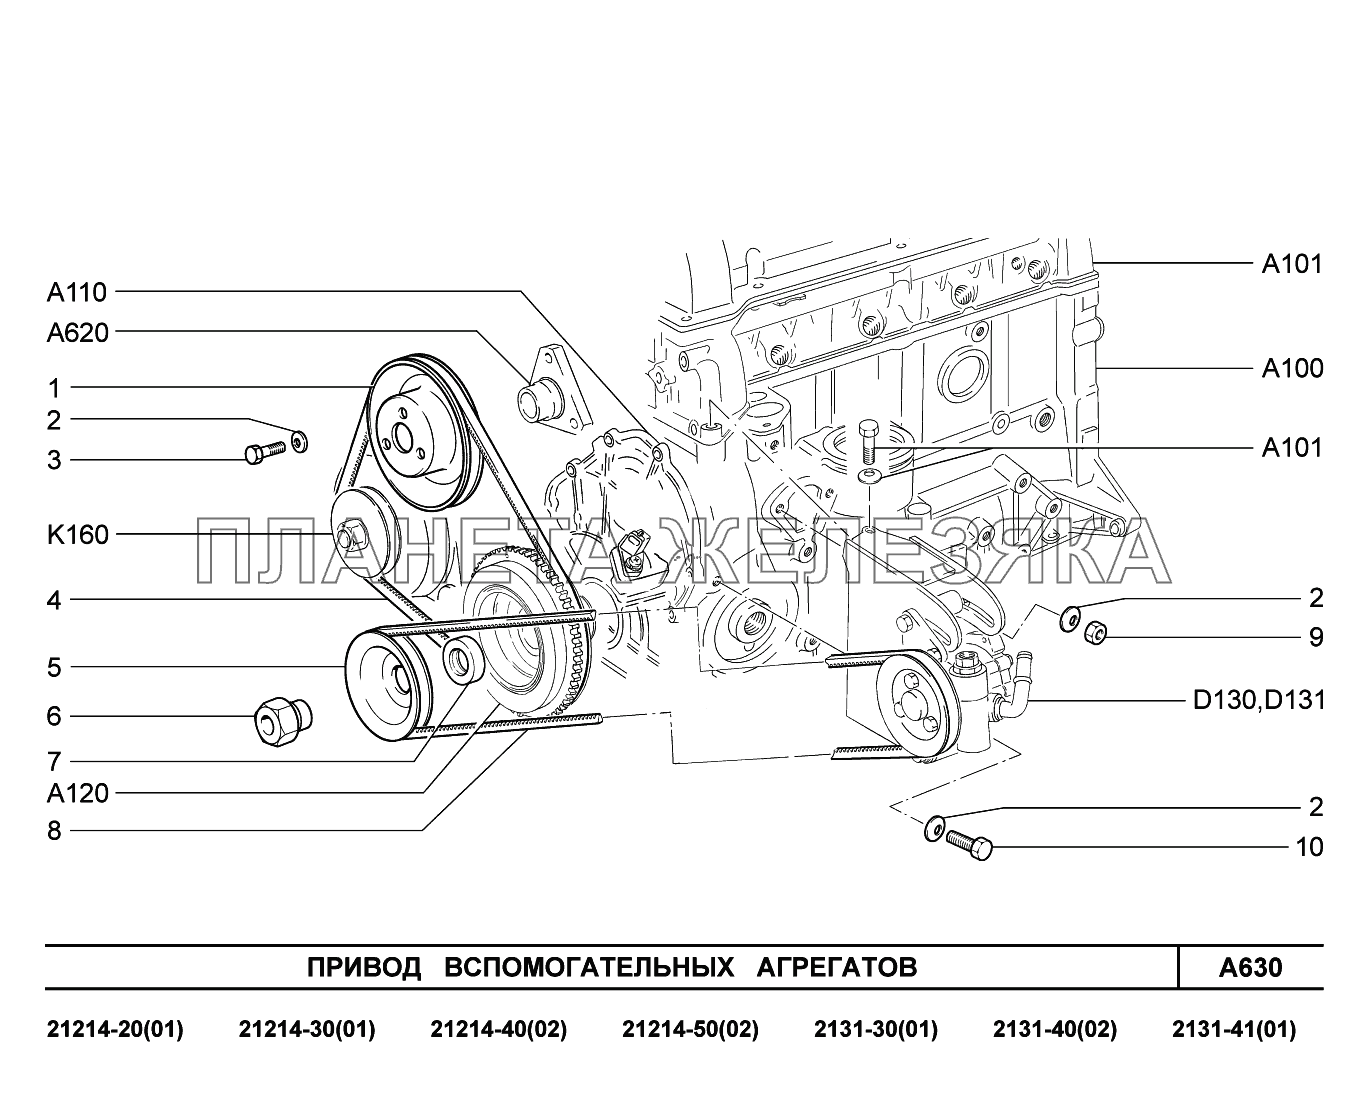 A630. Привод вспомогательных агрегатов LADA 4x4